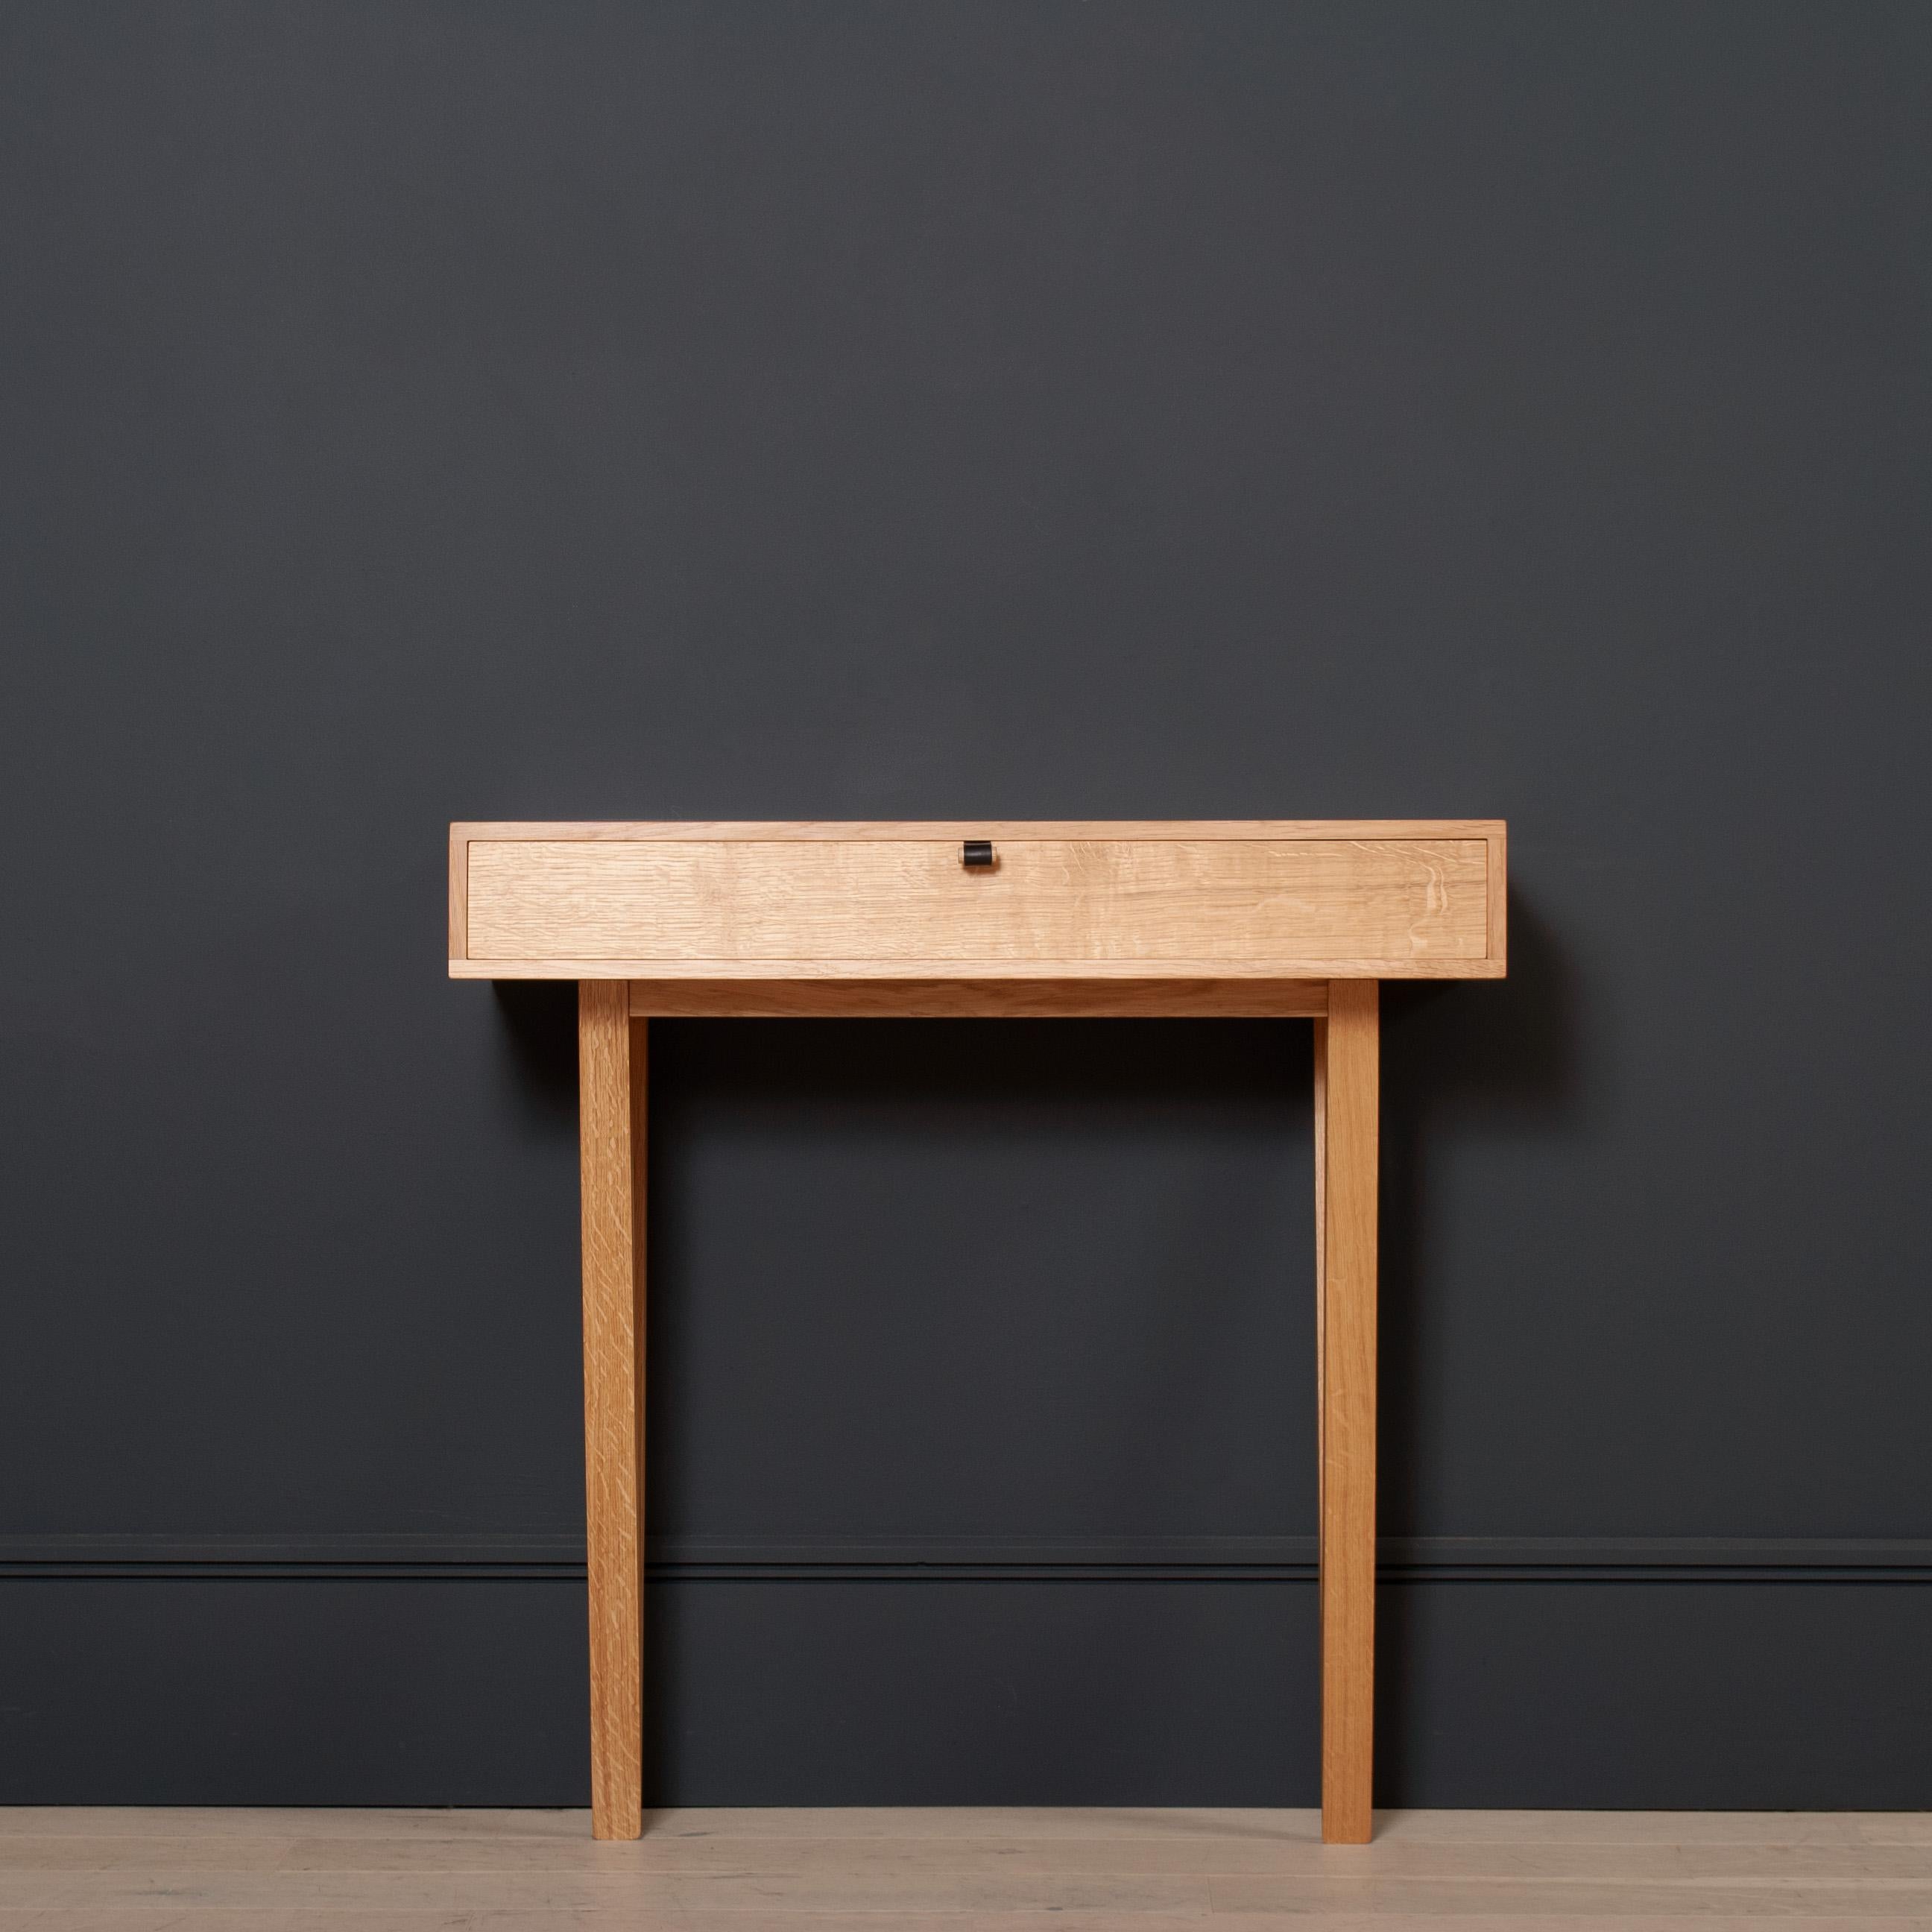 Table console moderniste conçue et fabriquée à la main en Angleterre en utilisant des techniques traditionnelles de fabrication de meubles. Entièrement fabriqué à la main en chêne anglais scié sur quartier. Joints à queue d'aronde à la main pour la